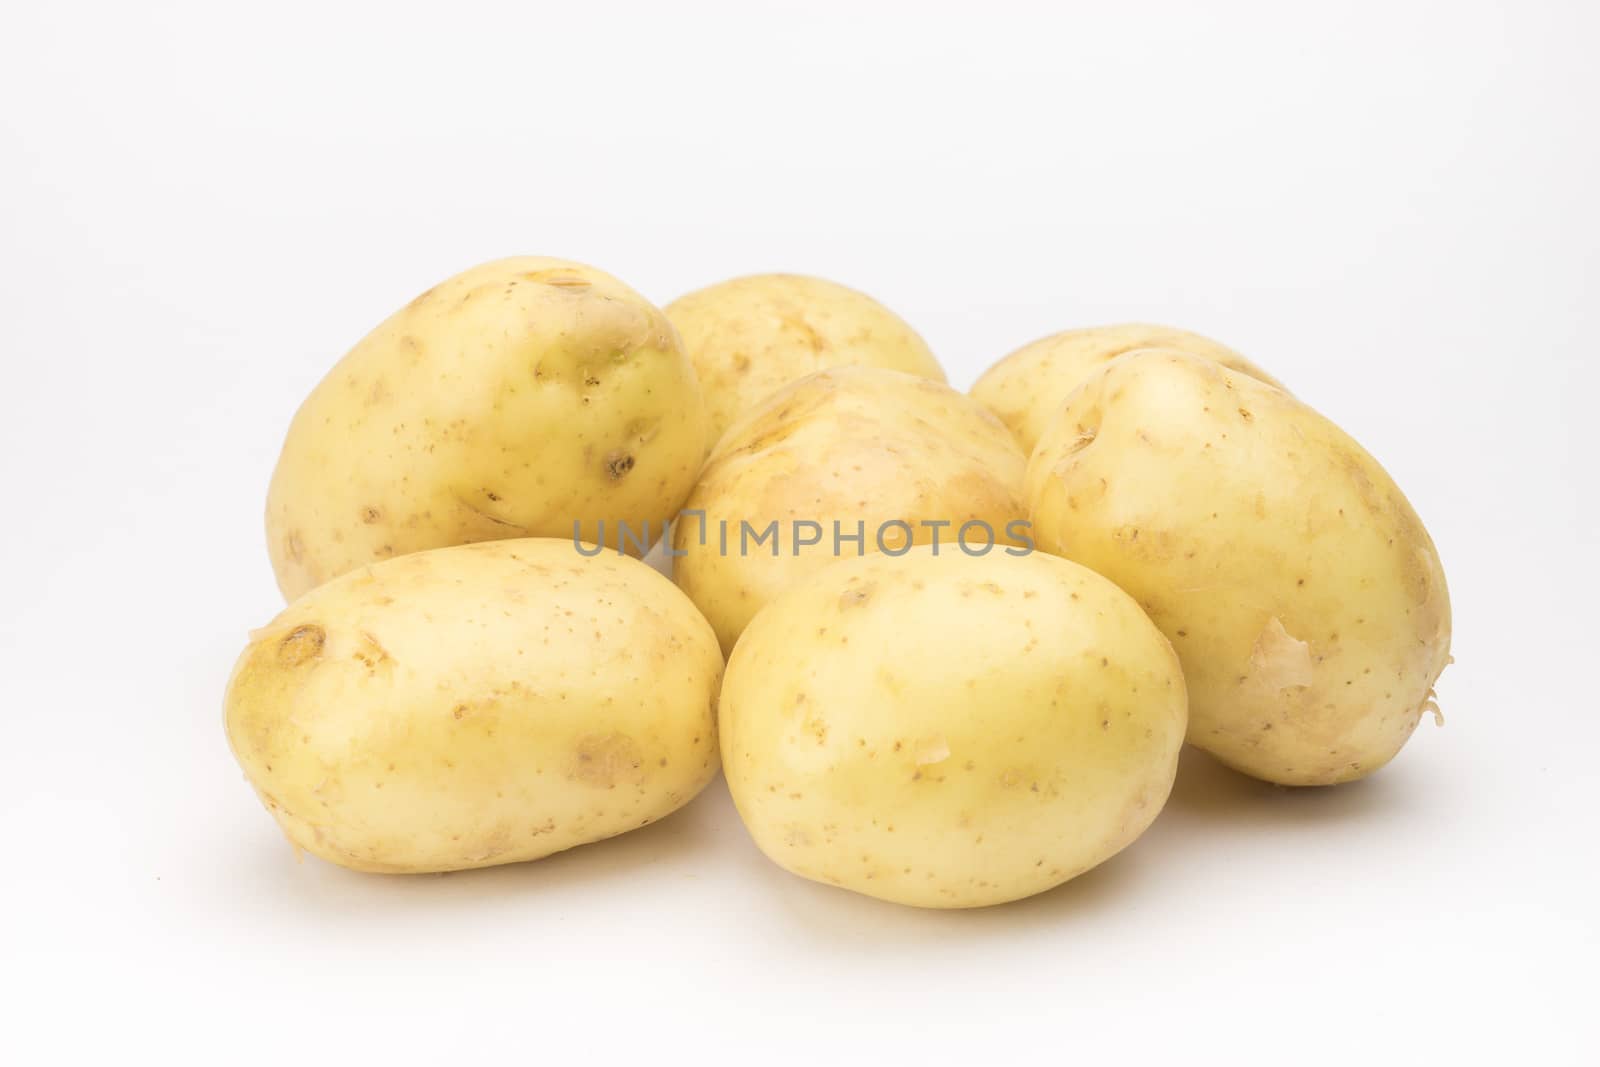 Potato on the white background by Alicephoto